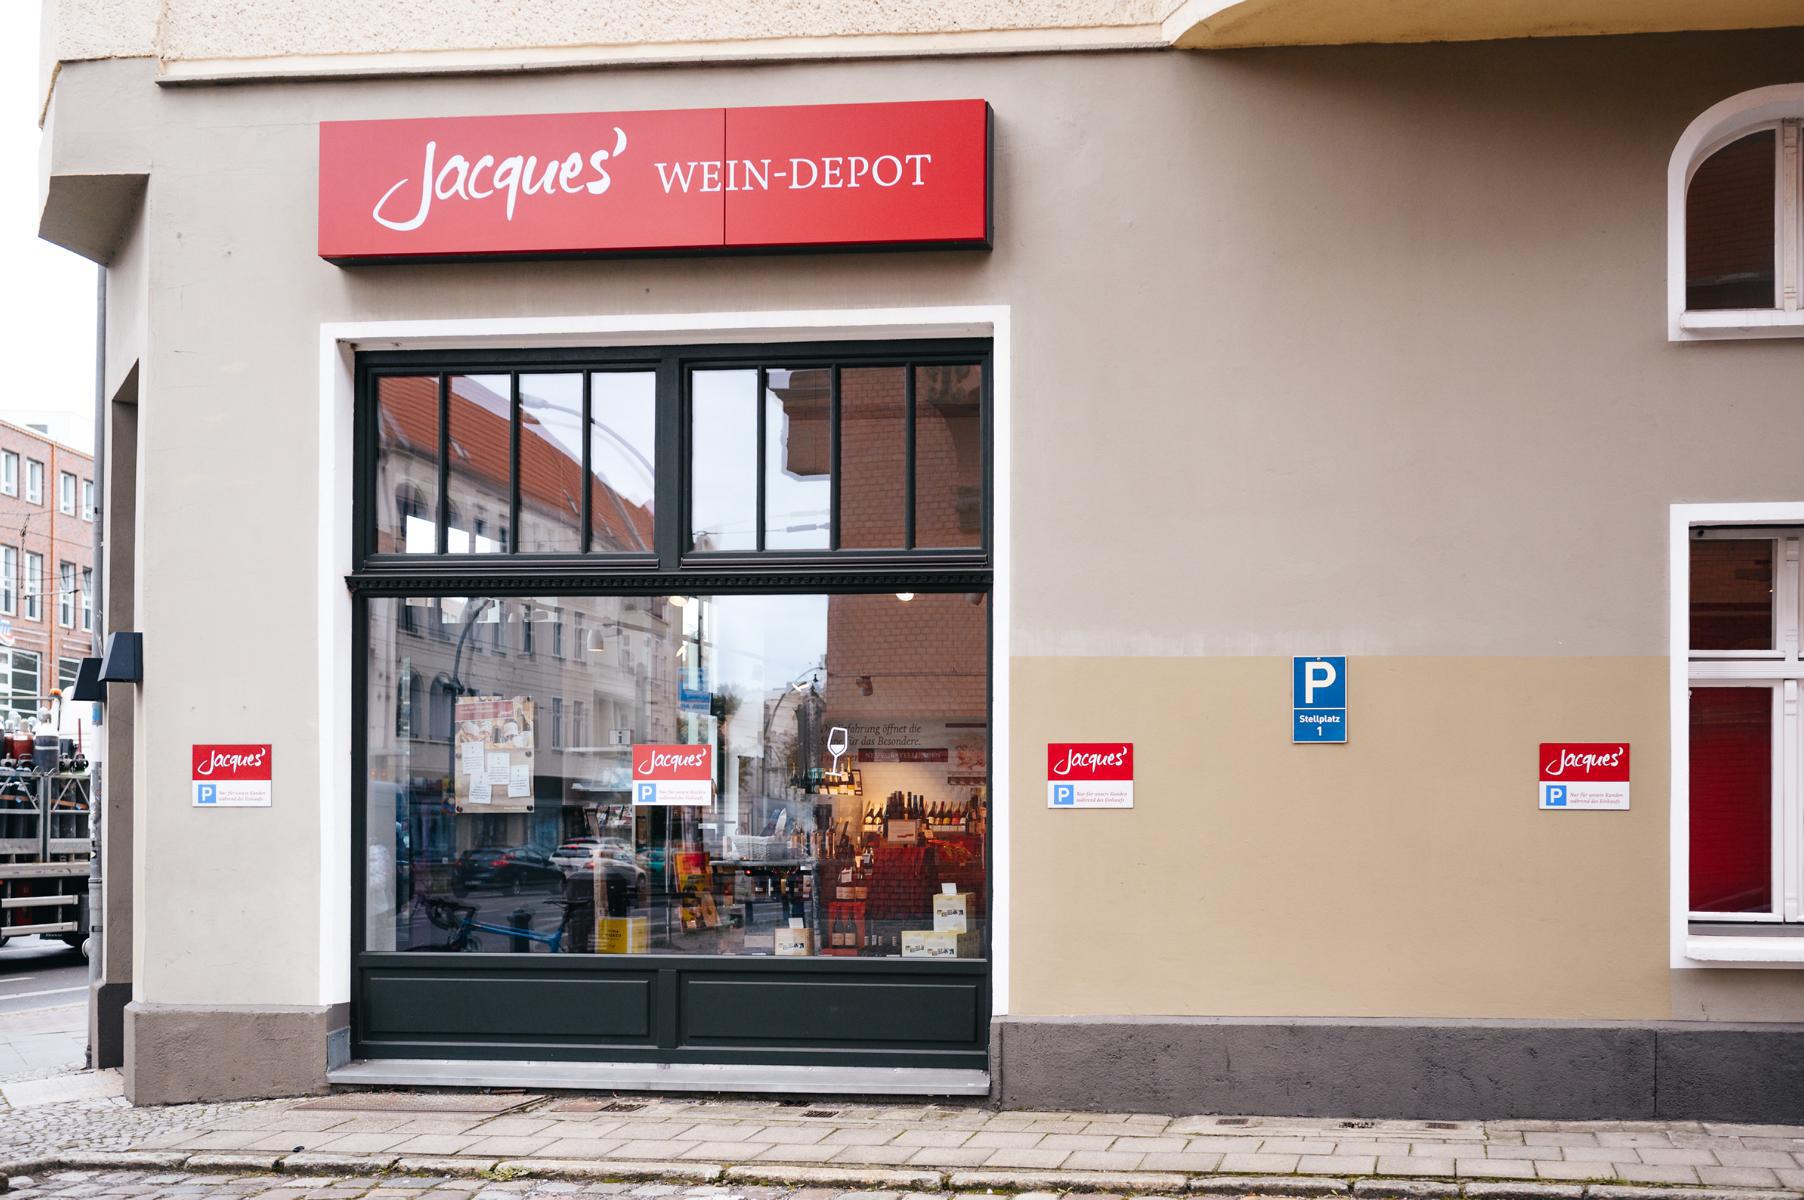 Bild 3 Jacques’ Wein-Depot Berlin-Pankow in Berlin